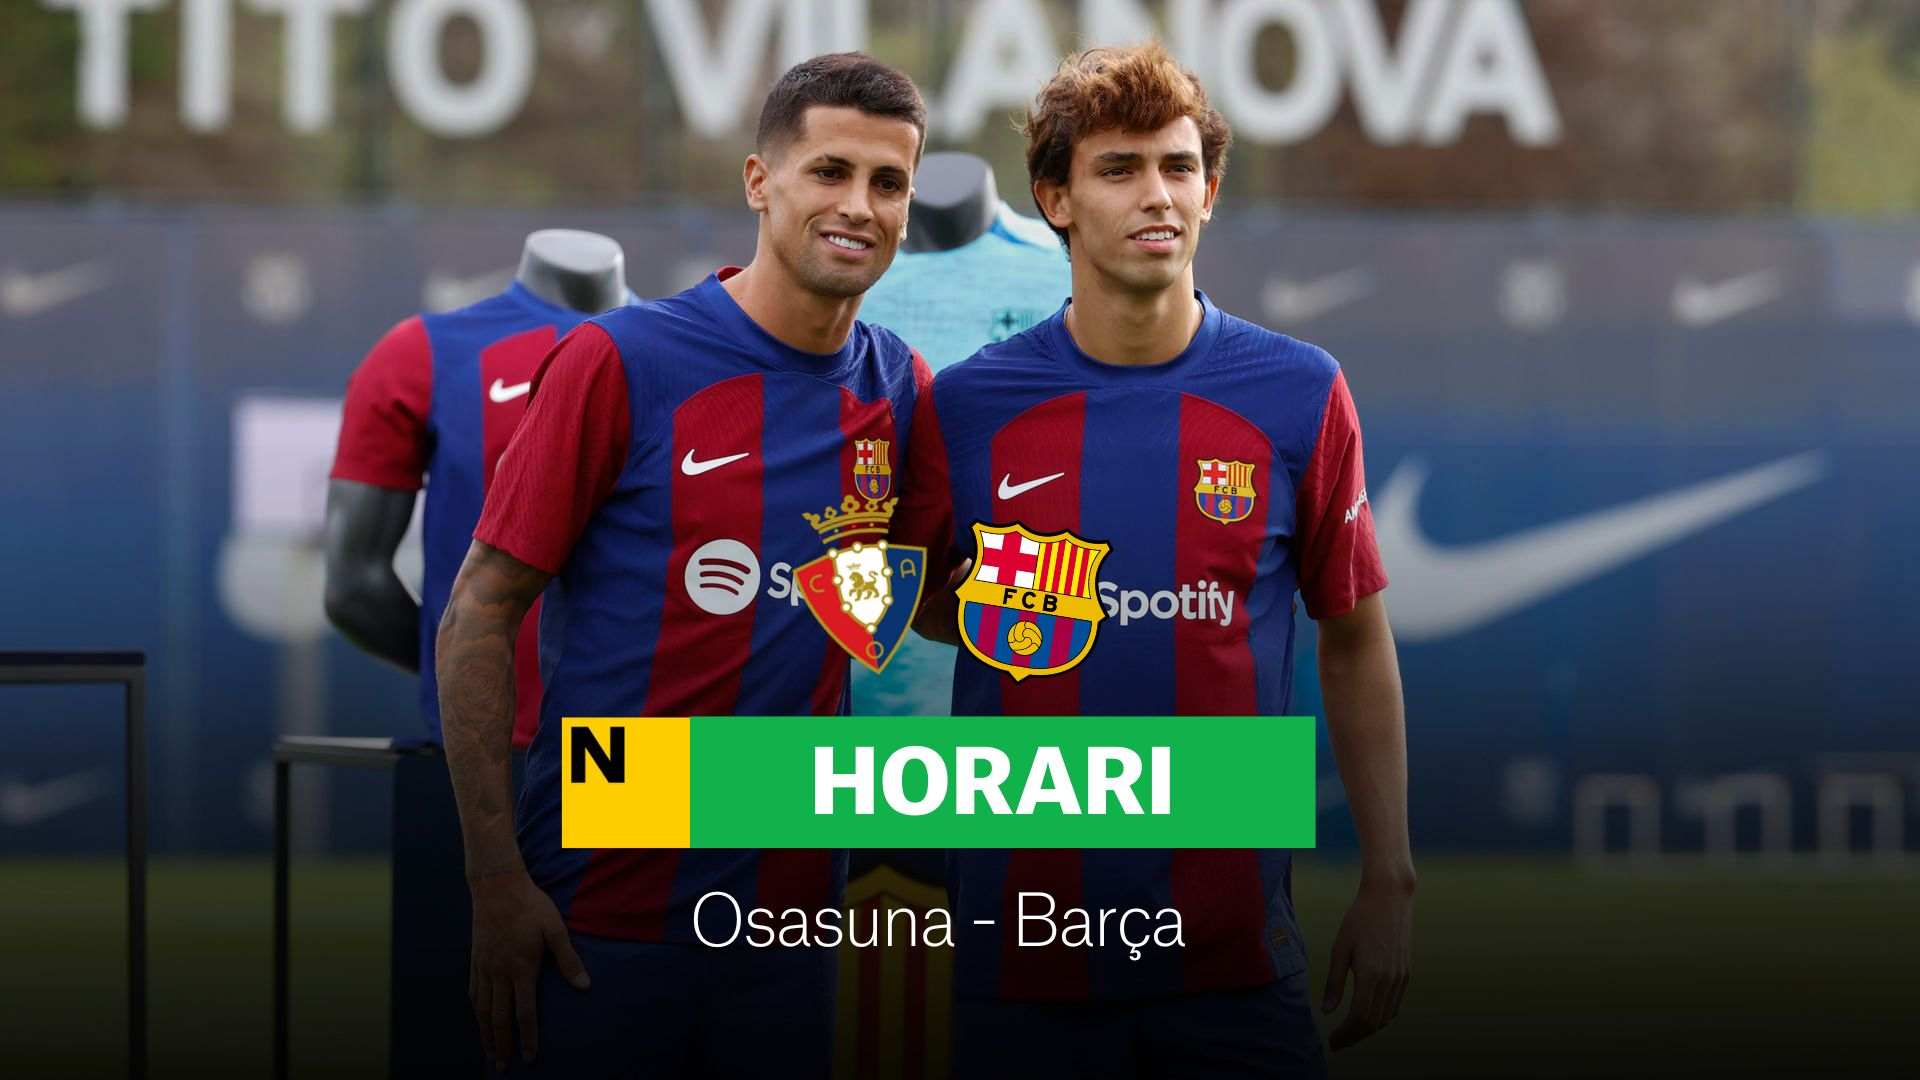 Osasuna - Barça avui: Convocatoria, horari i on veure per TV la jornada 4 de la Lliga EA Sports